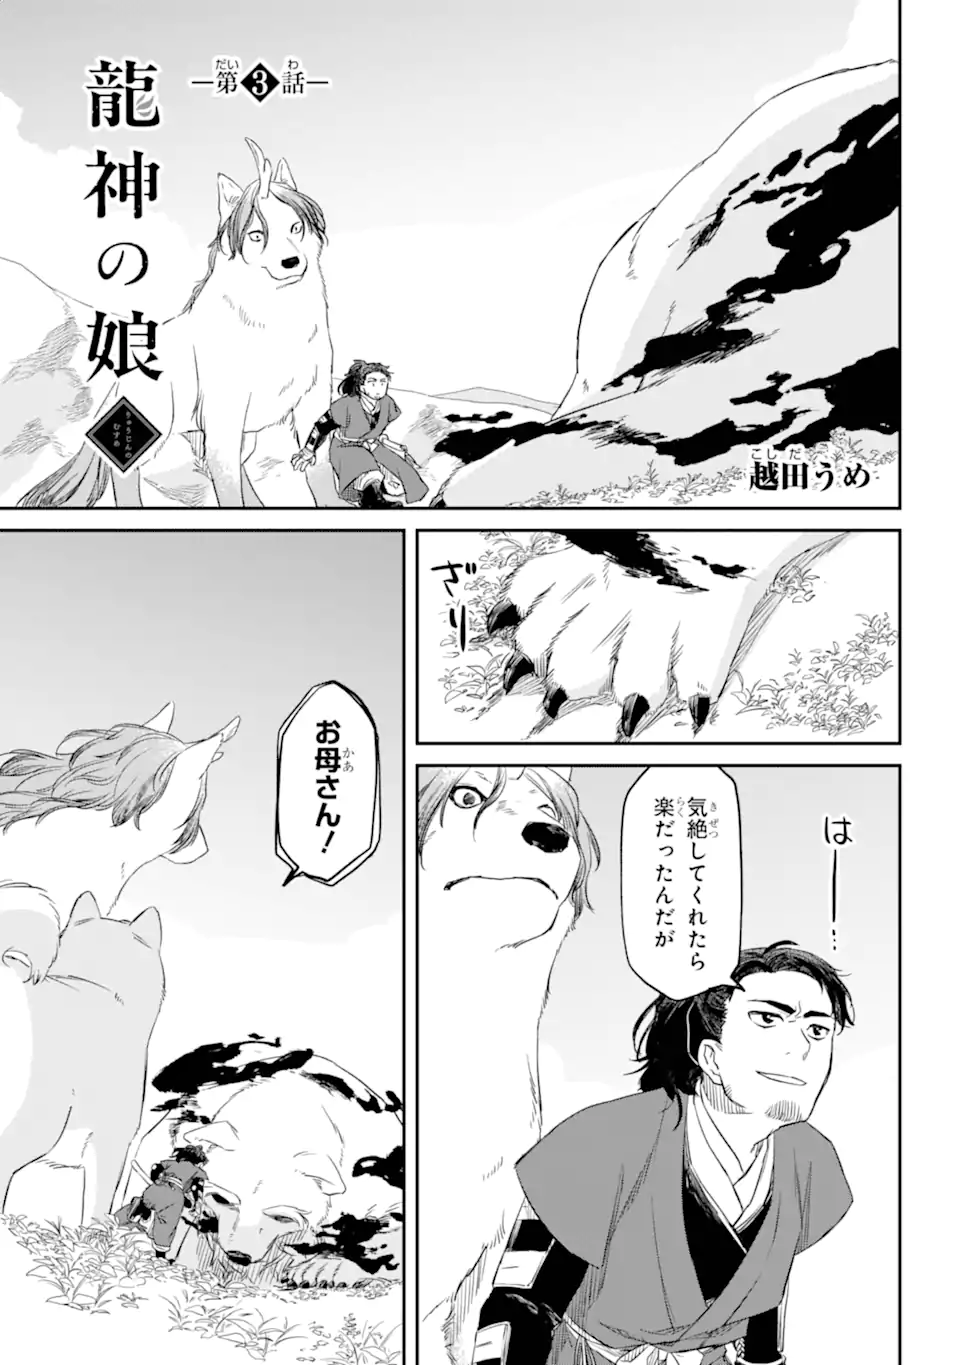 Ryuujin no Musume - Chapter 3.1 - Page 1